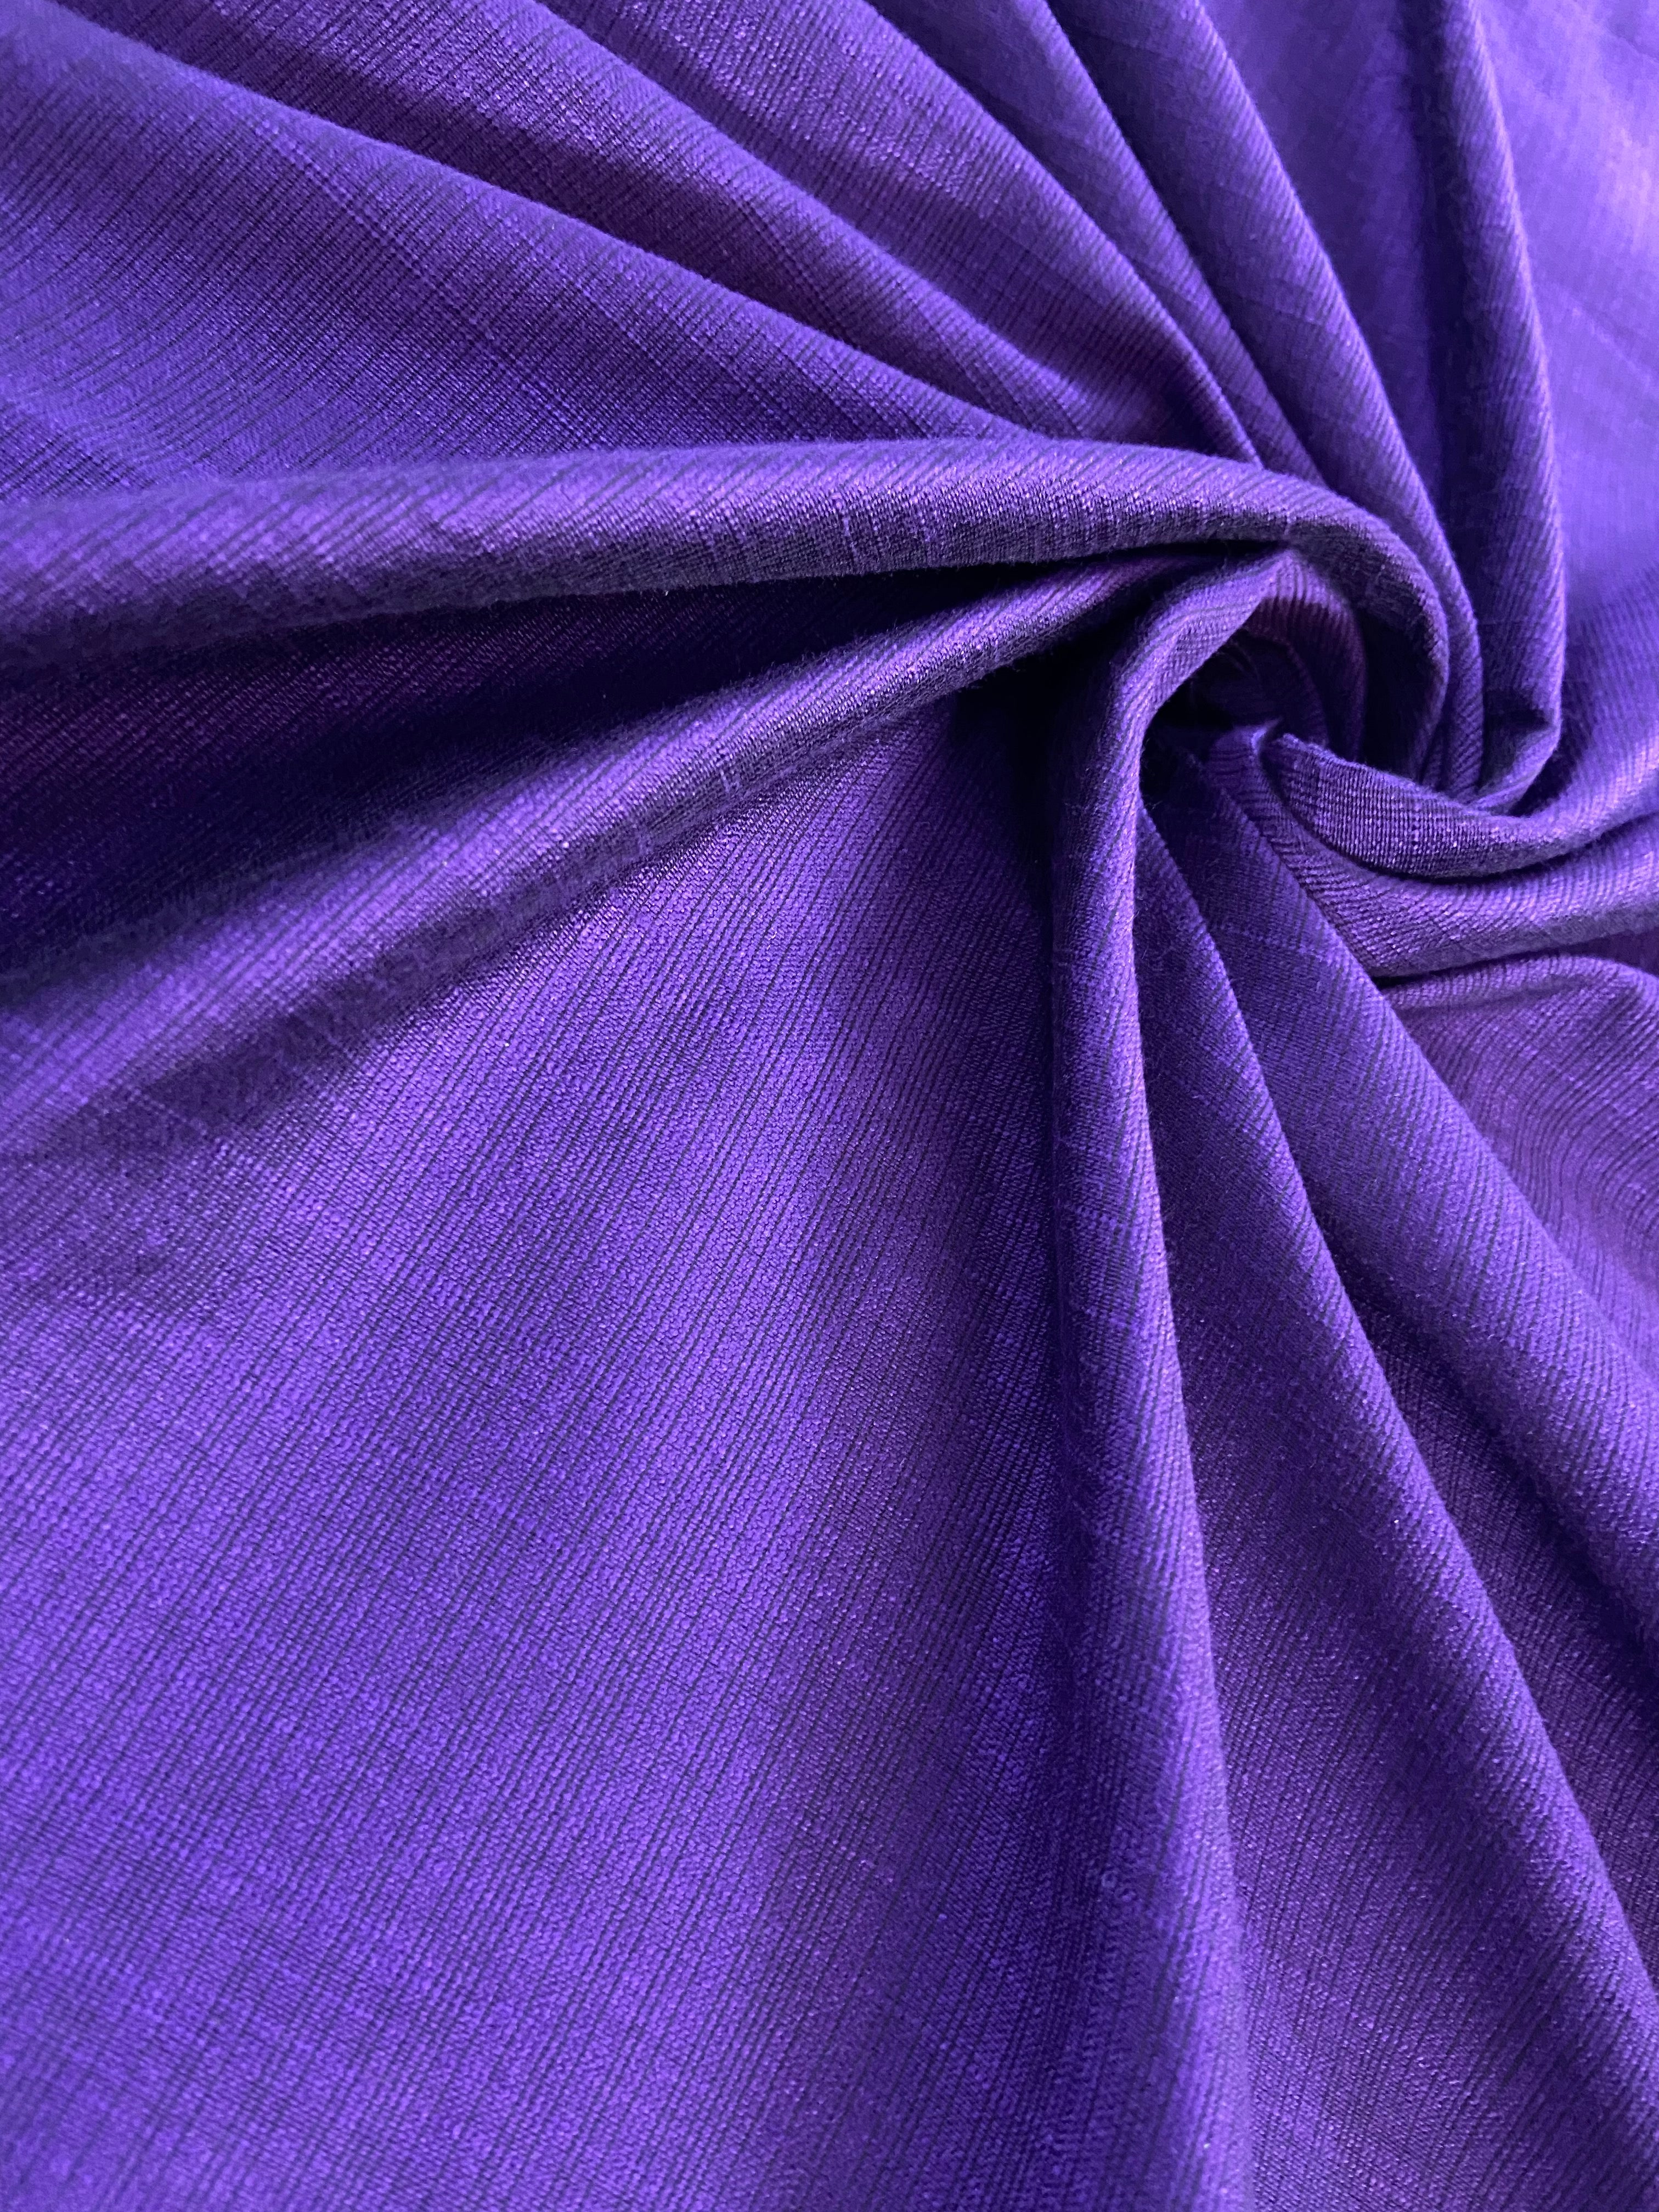 Fabric #006